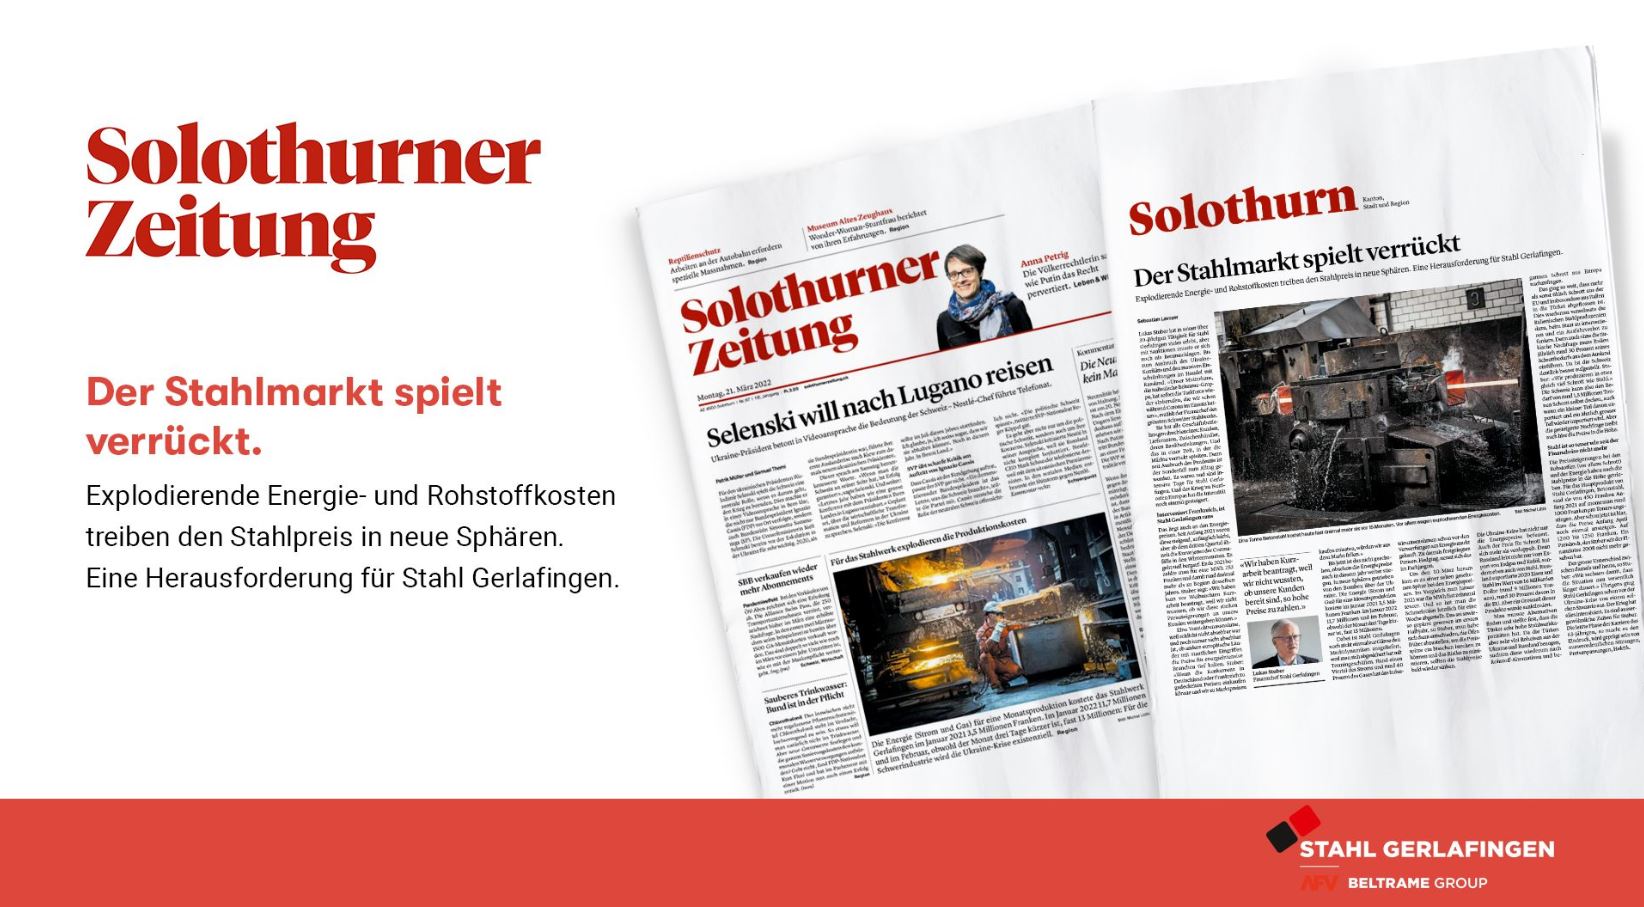 Un interessante articolo pubblicato da Solothurn Zeitung focalizzato sul mercato svizzero